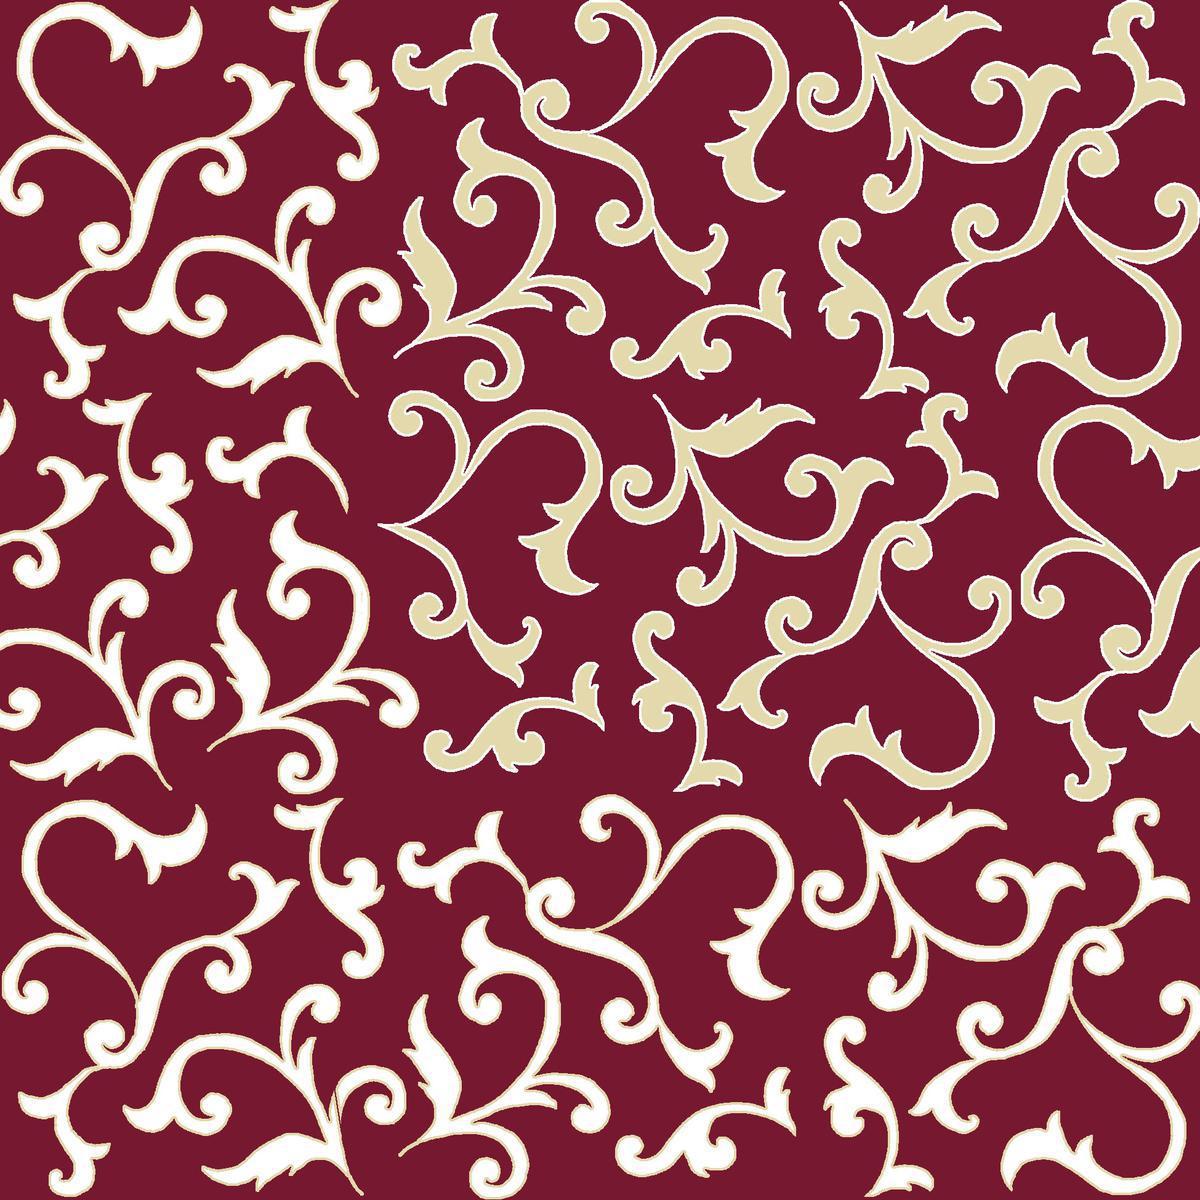 Lot de 20 serviettes imprimées Volute Bordeaux - 33 x 33 cm - Ouate de Cellulose - Multicolore